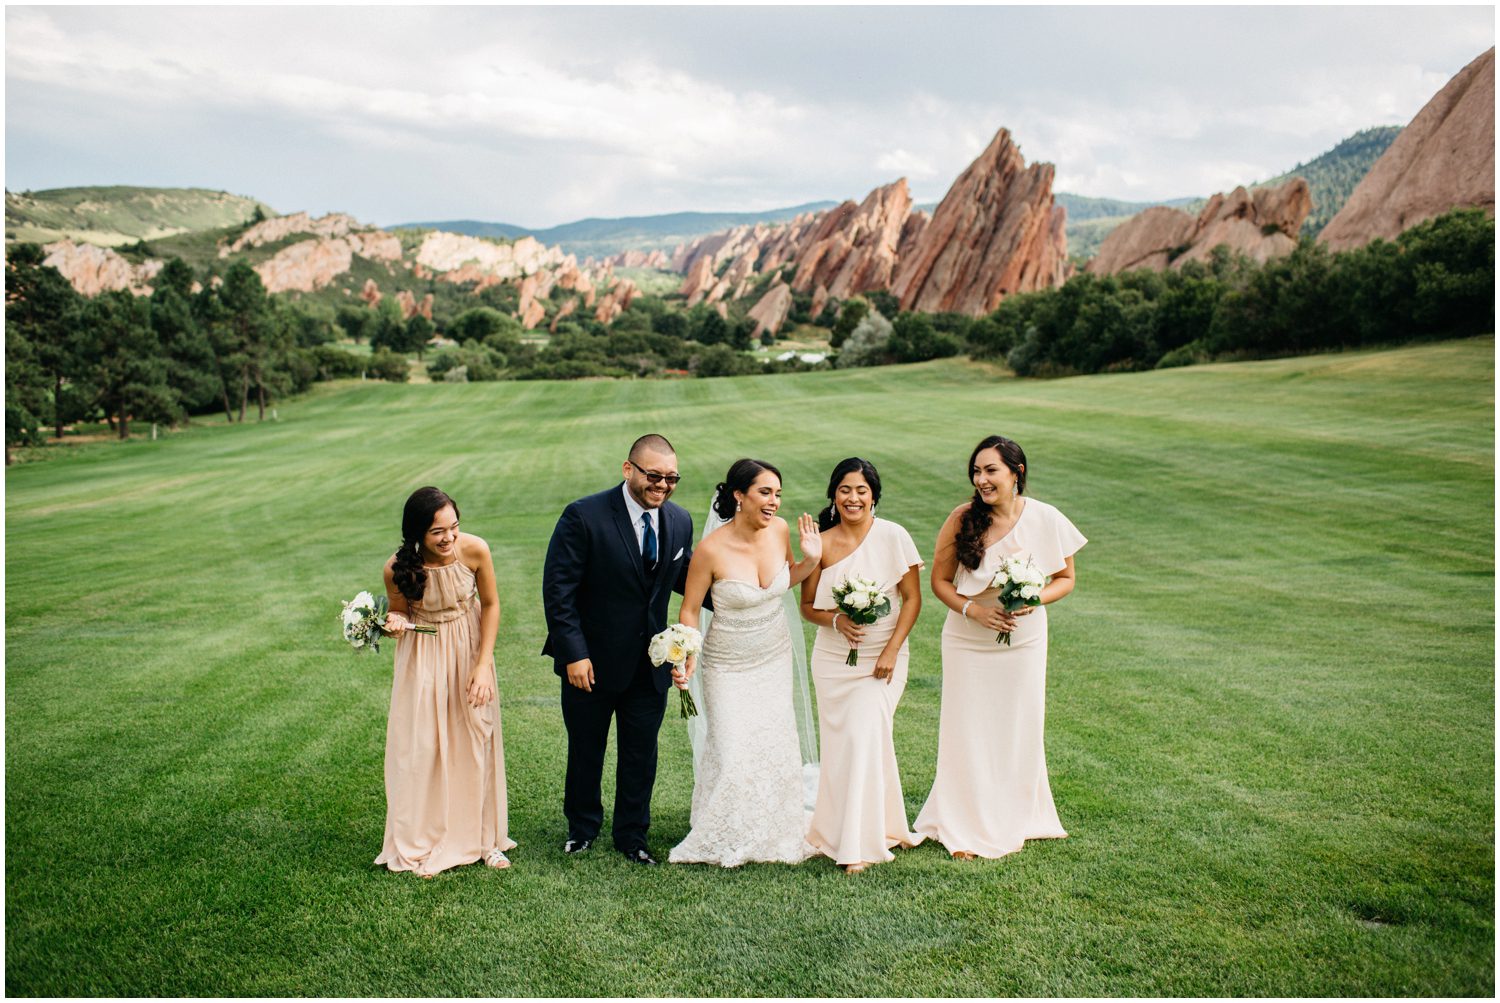 Wedding party photos, Bridal party photos, Man of honor, Arrowhead golf club wedding photos, Colorado Wedding Photographer